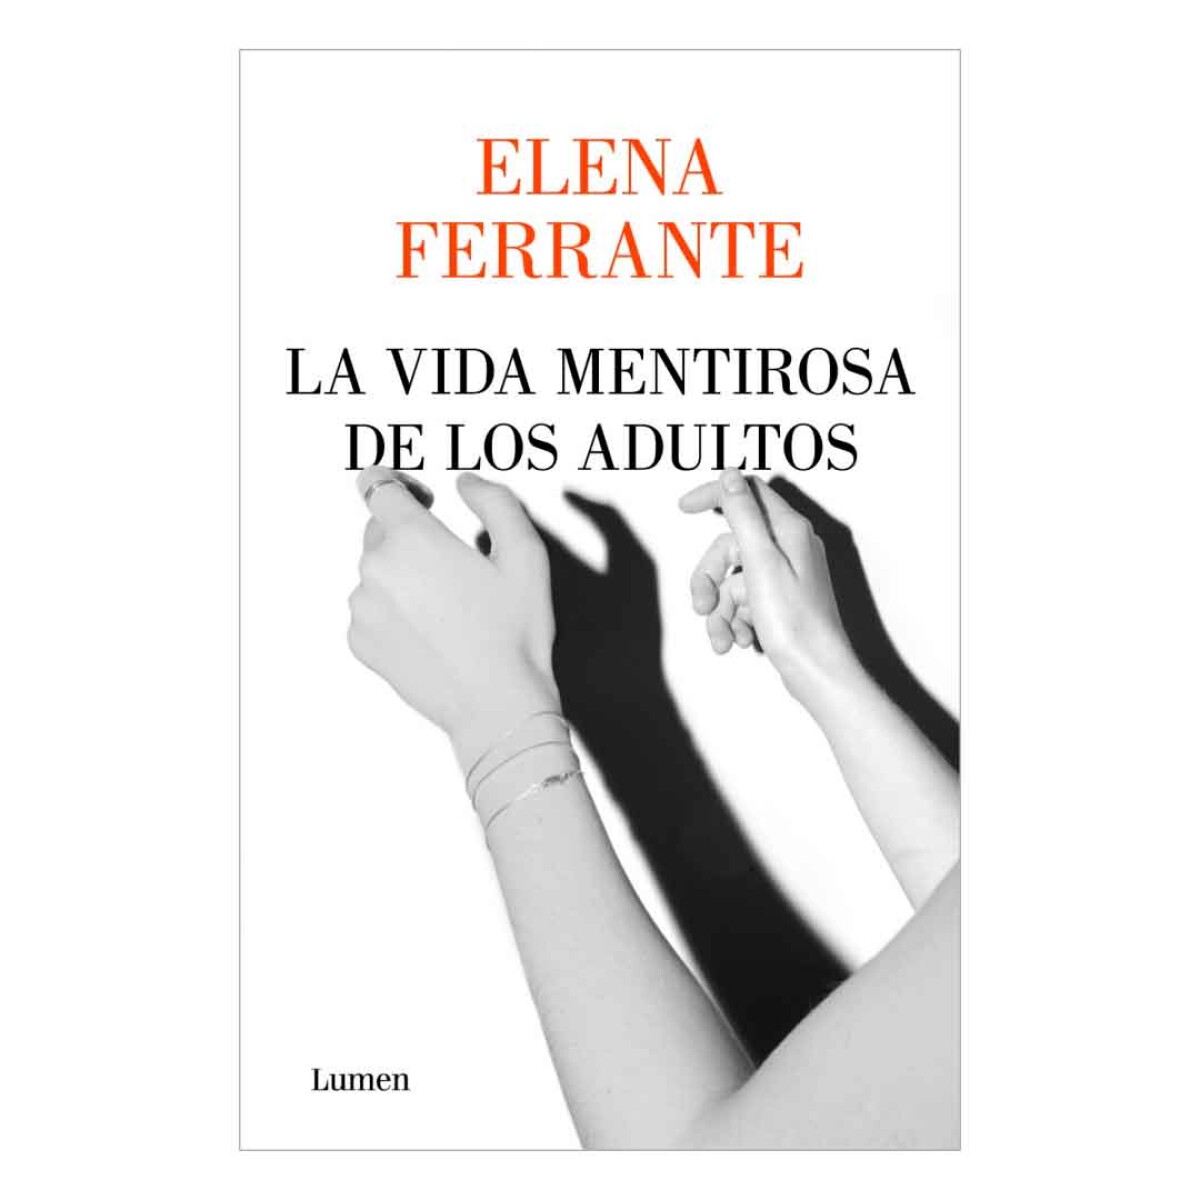 Libro La vida mentirosa de los adultos by Elena Errante - 001 